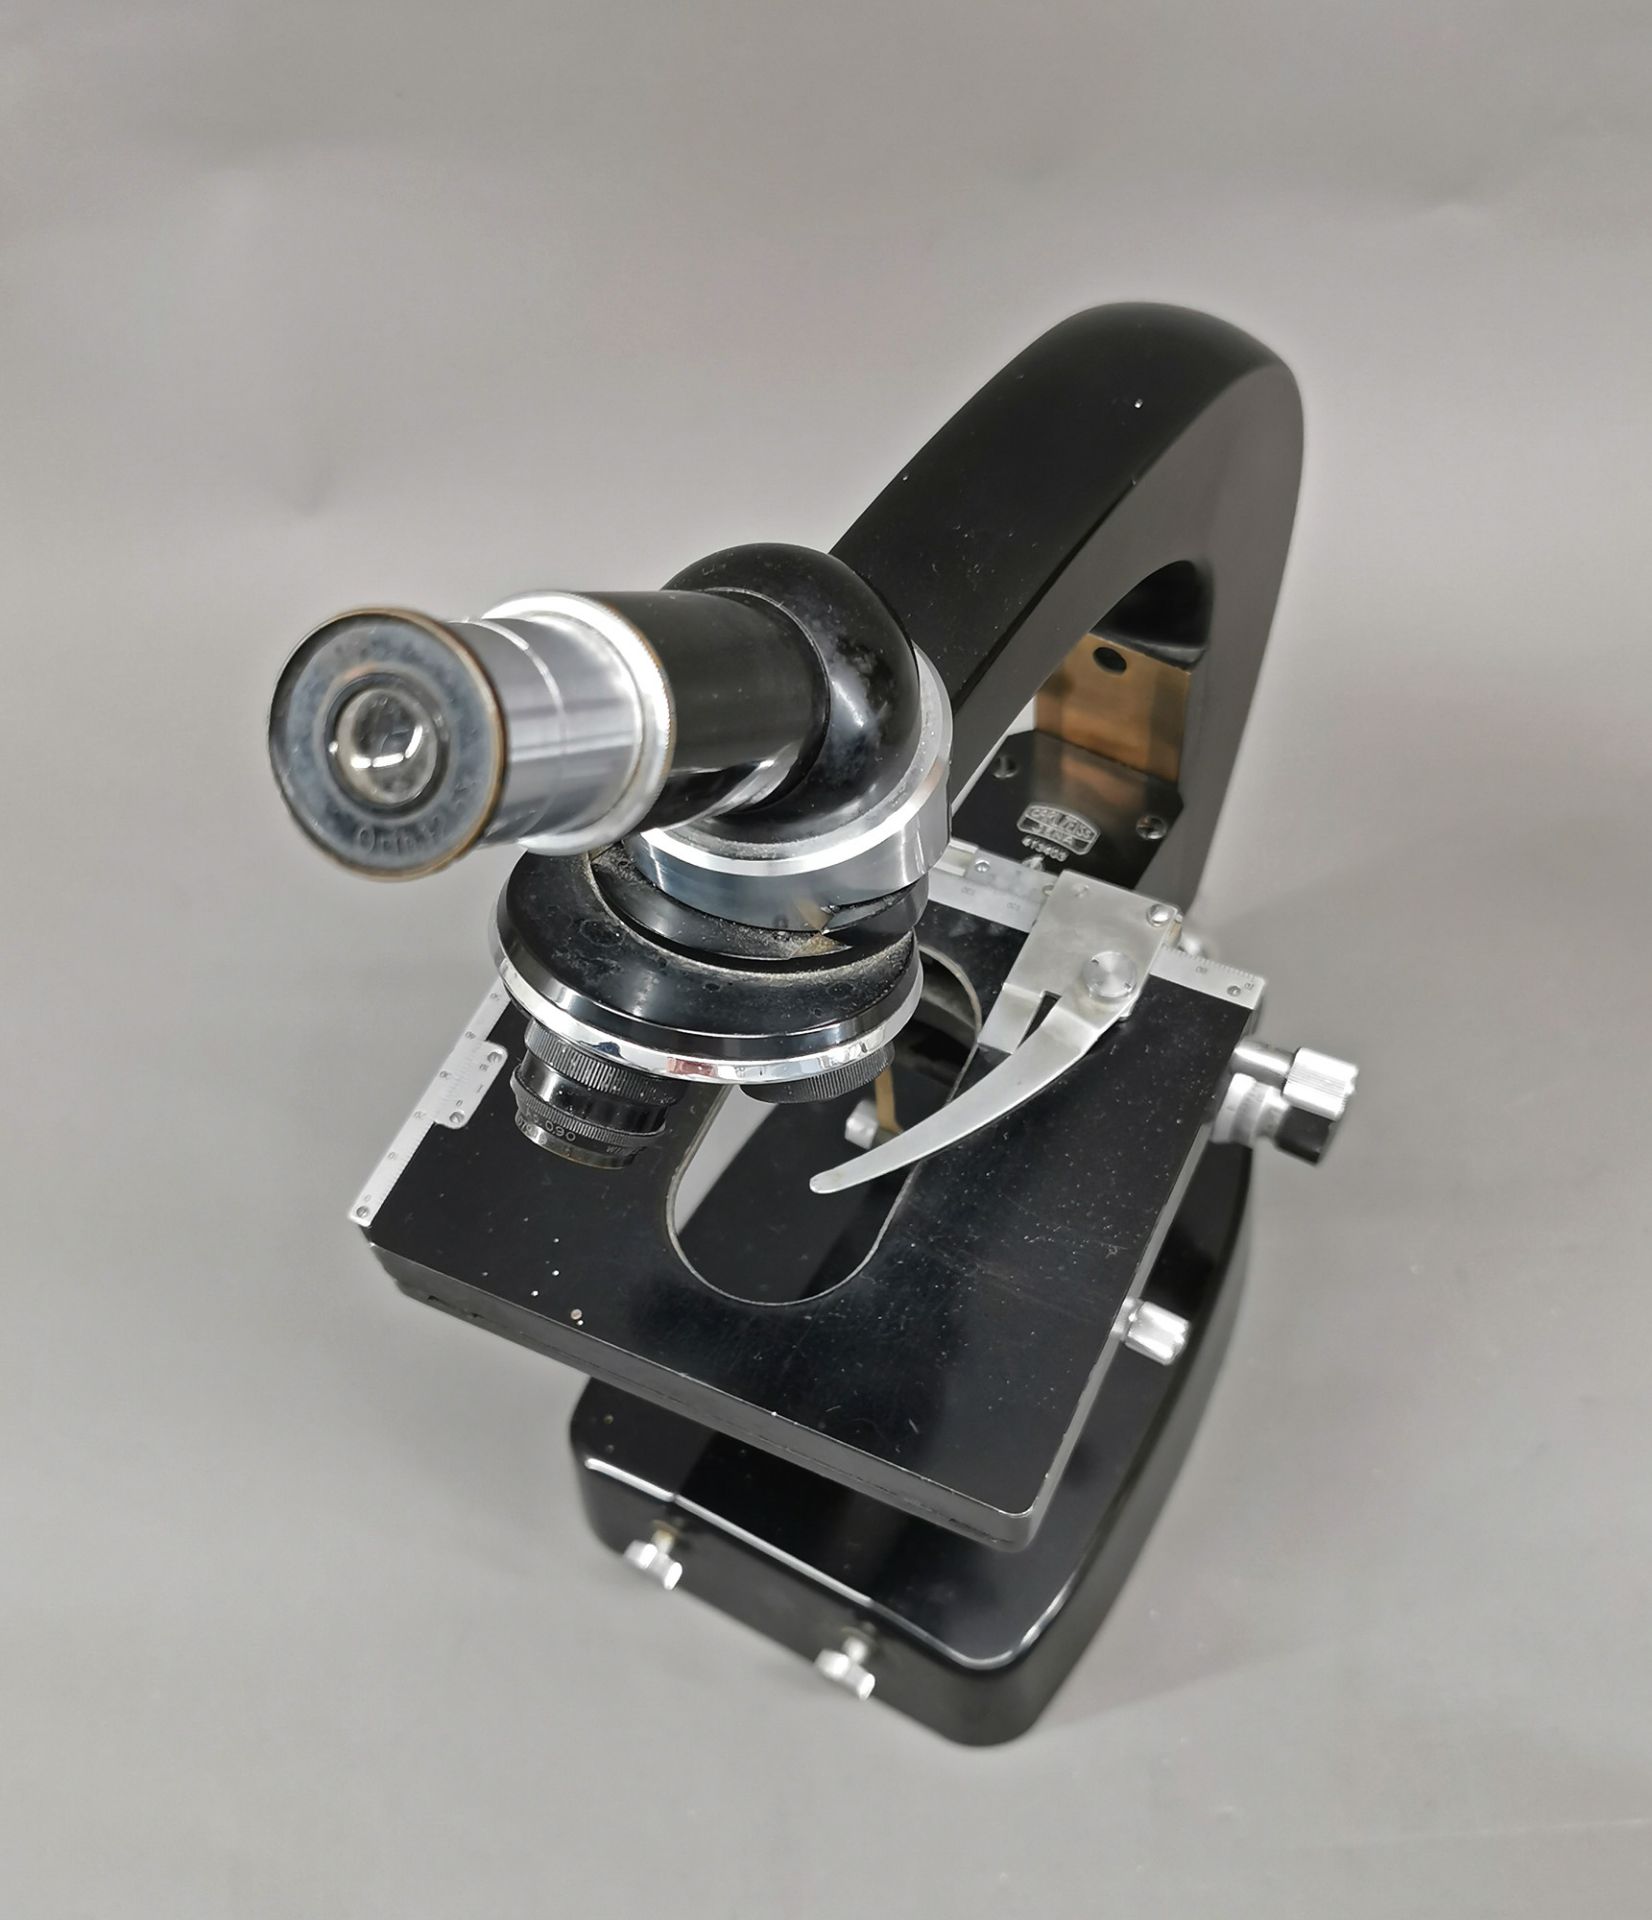 Mikroskop Carl Zeiss Jena und Stativ und Biotar 2/25 - Bild 5 aus 8